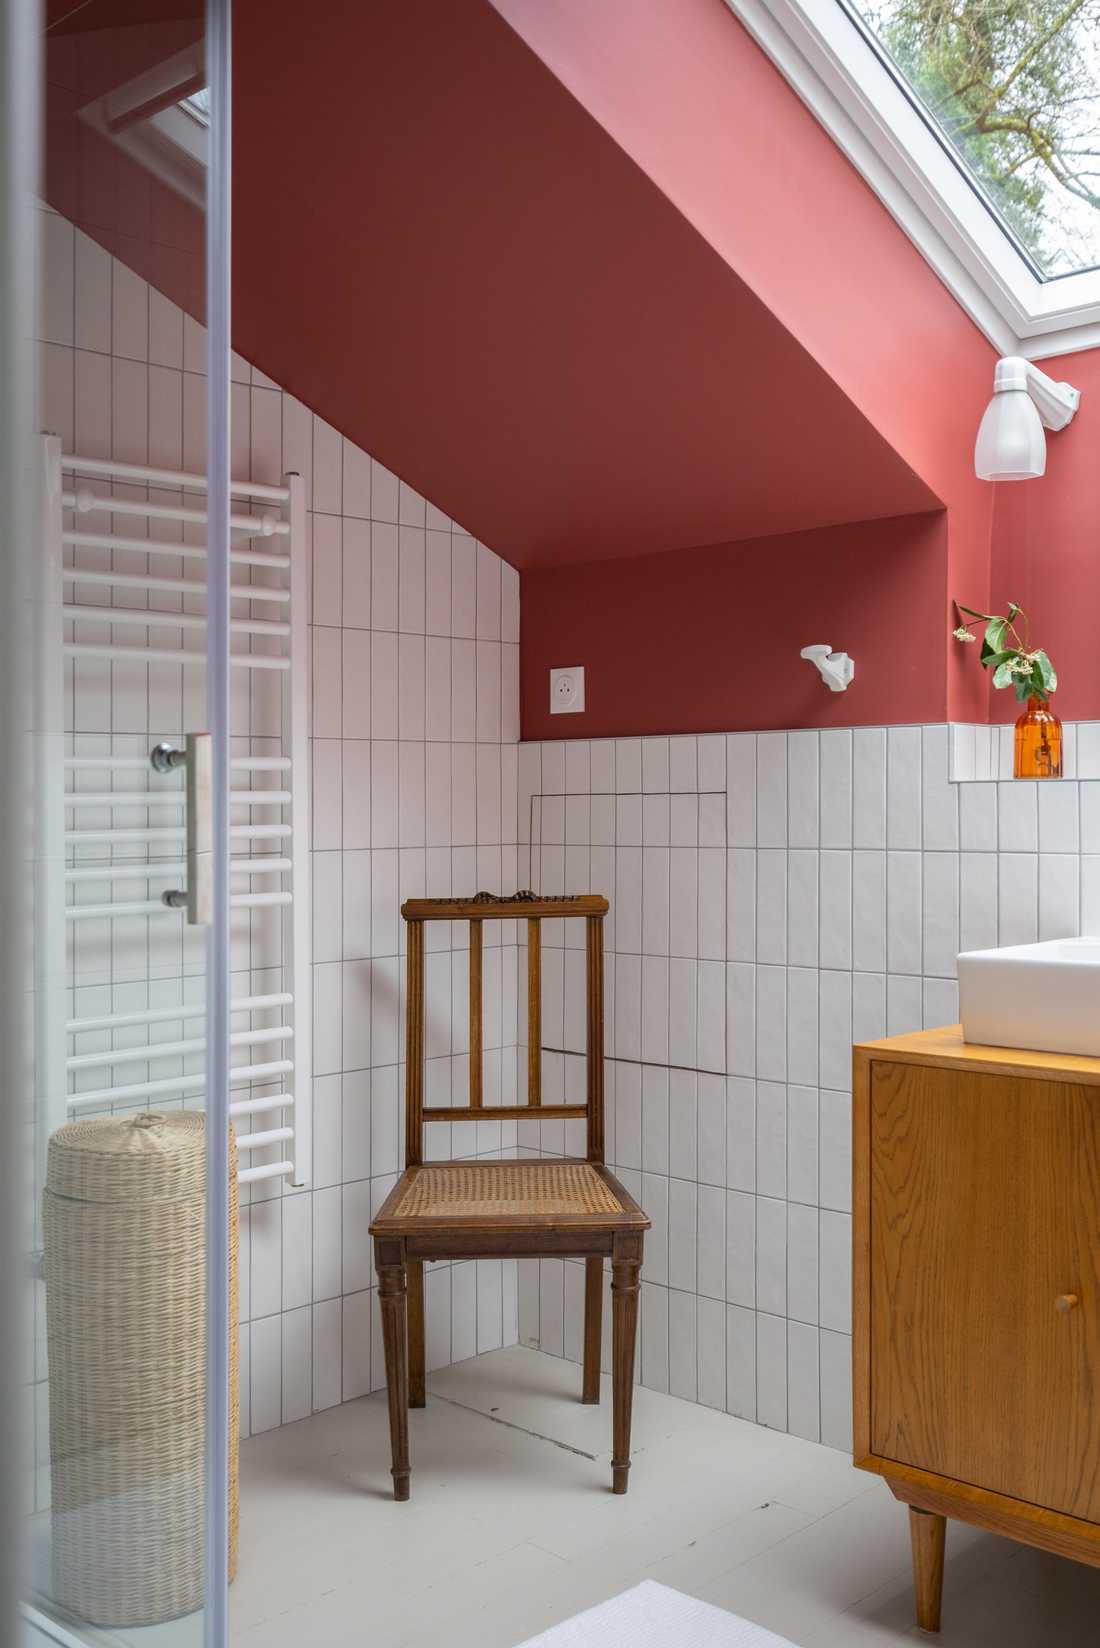 Salle de bain rose dans une maison percheronne